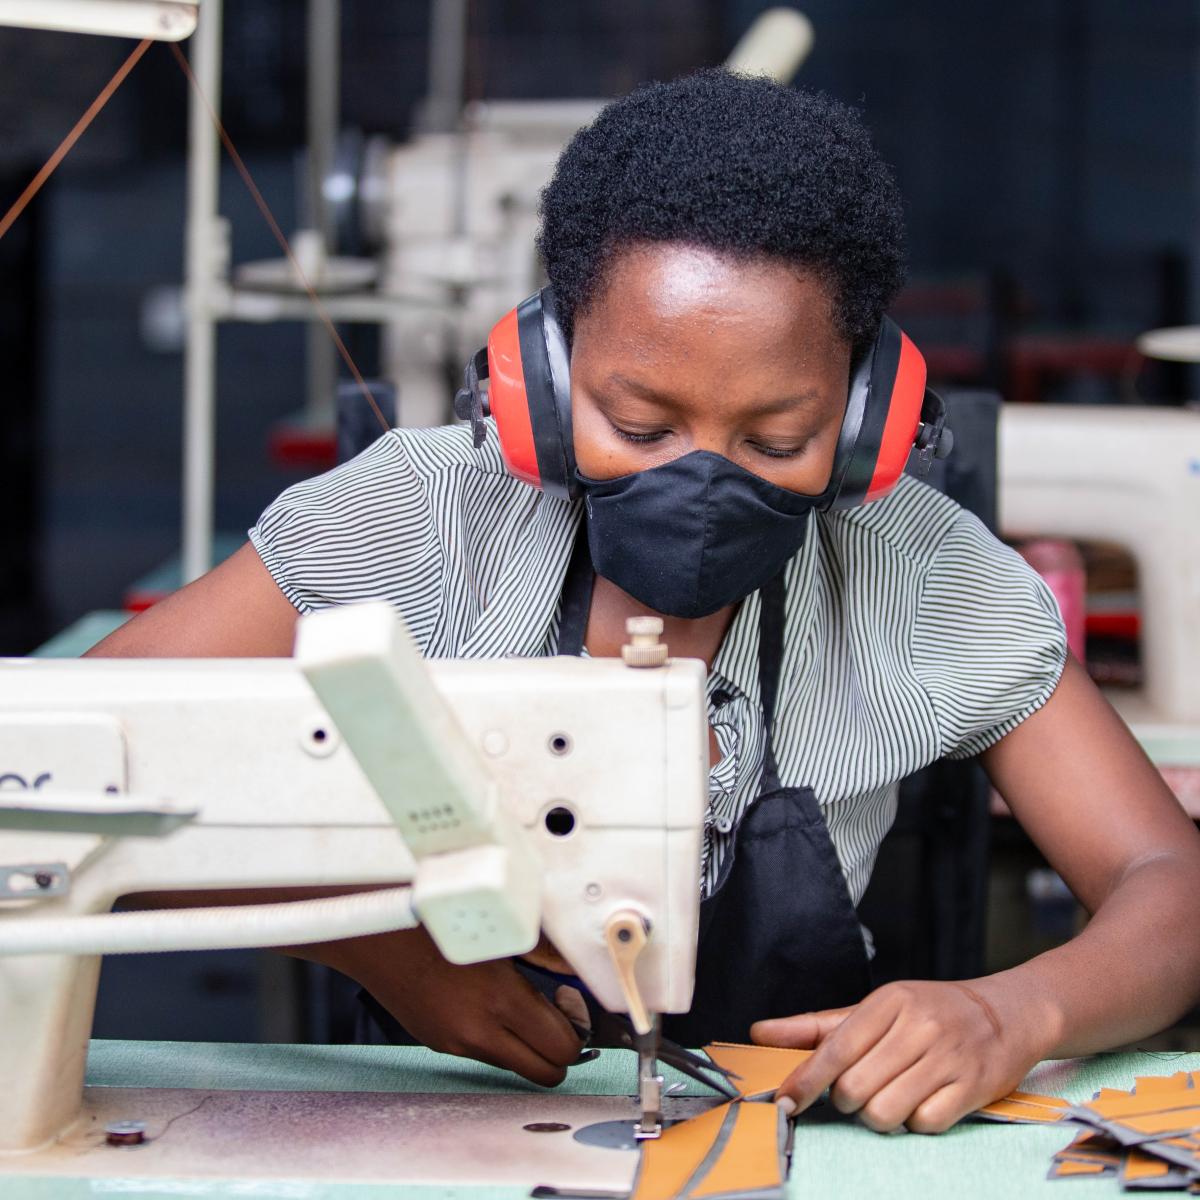 A female worker cuts leather at Uzuri K&Y’s workshop in Kigali, Rwanda. Uzuri K&Y Limited